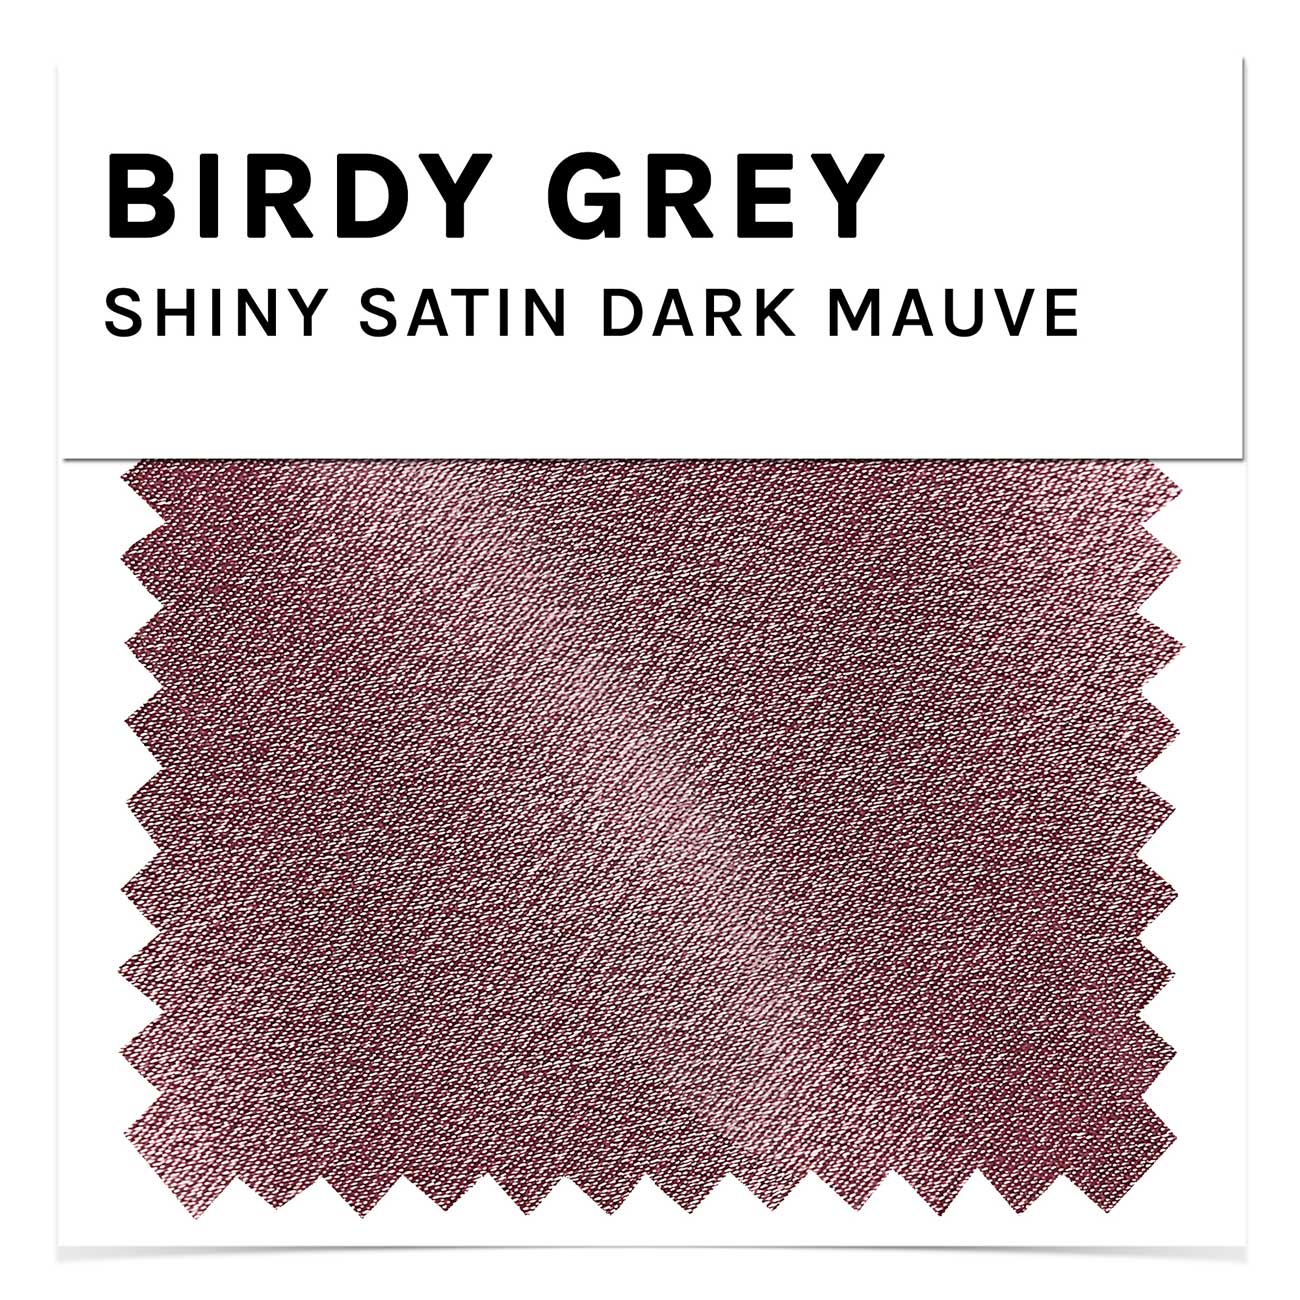 Swatch - Shiny Satin in Dark Mauve by Birdy Grey